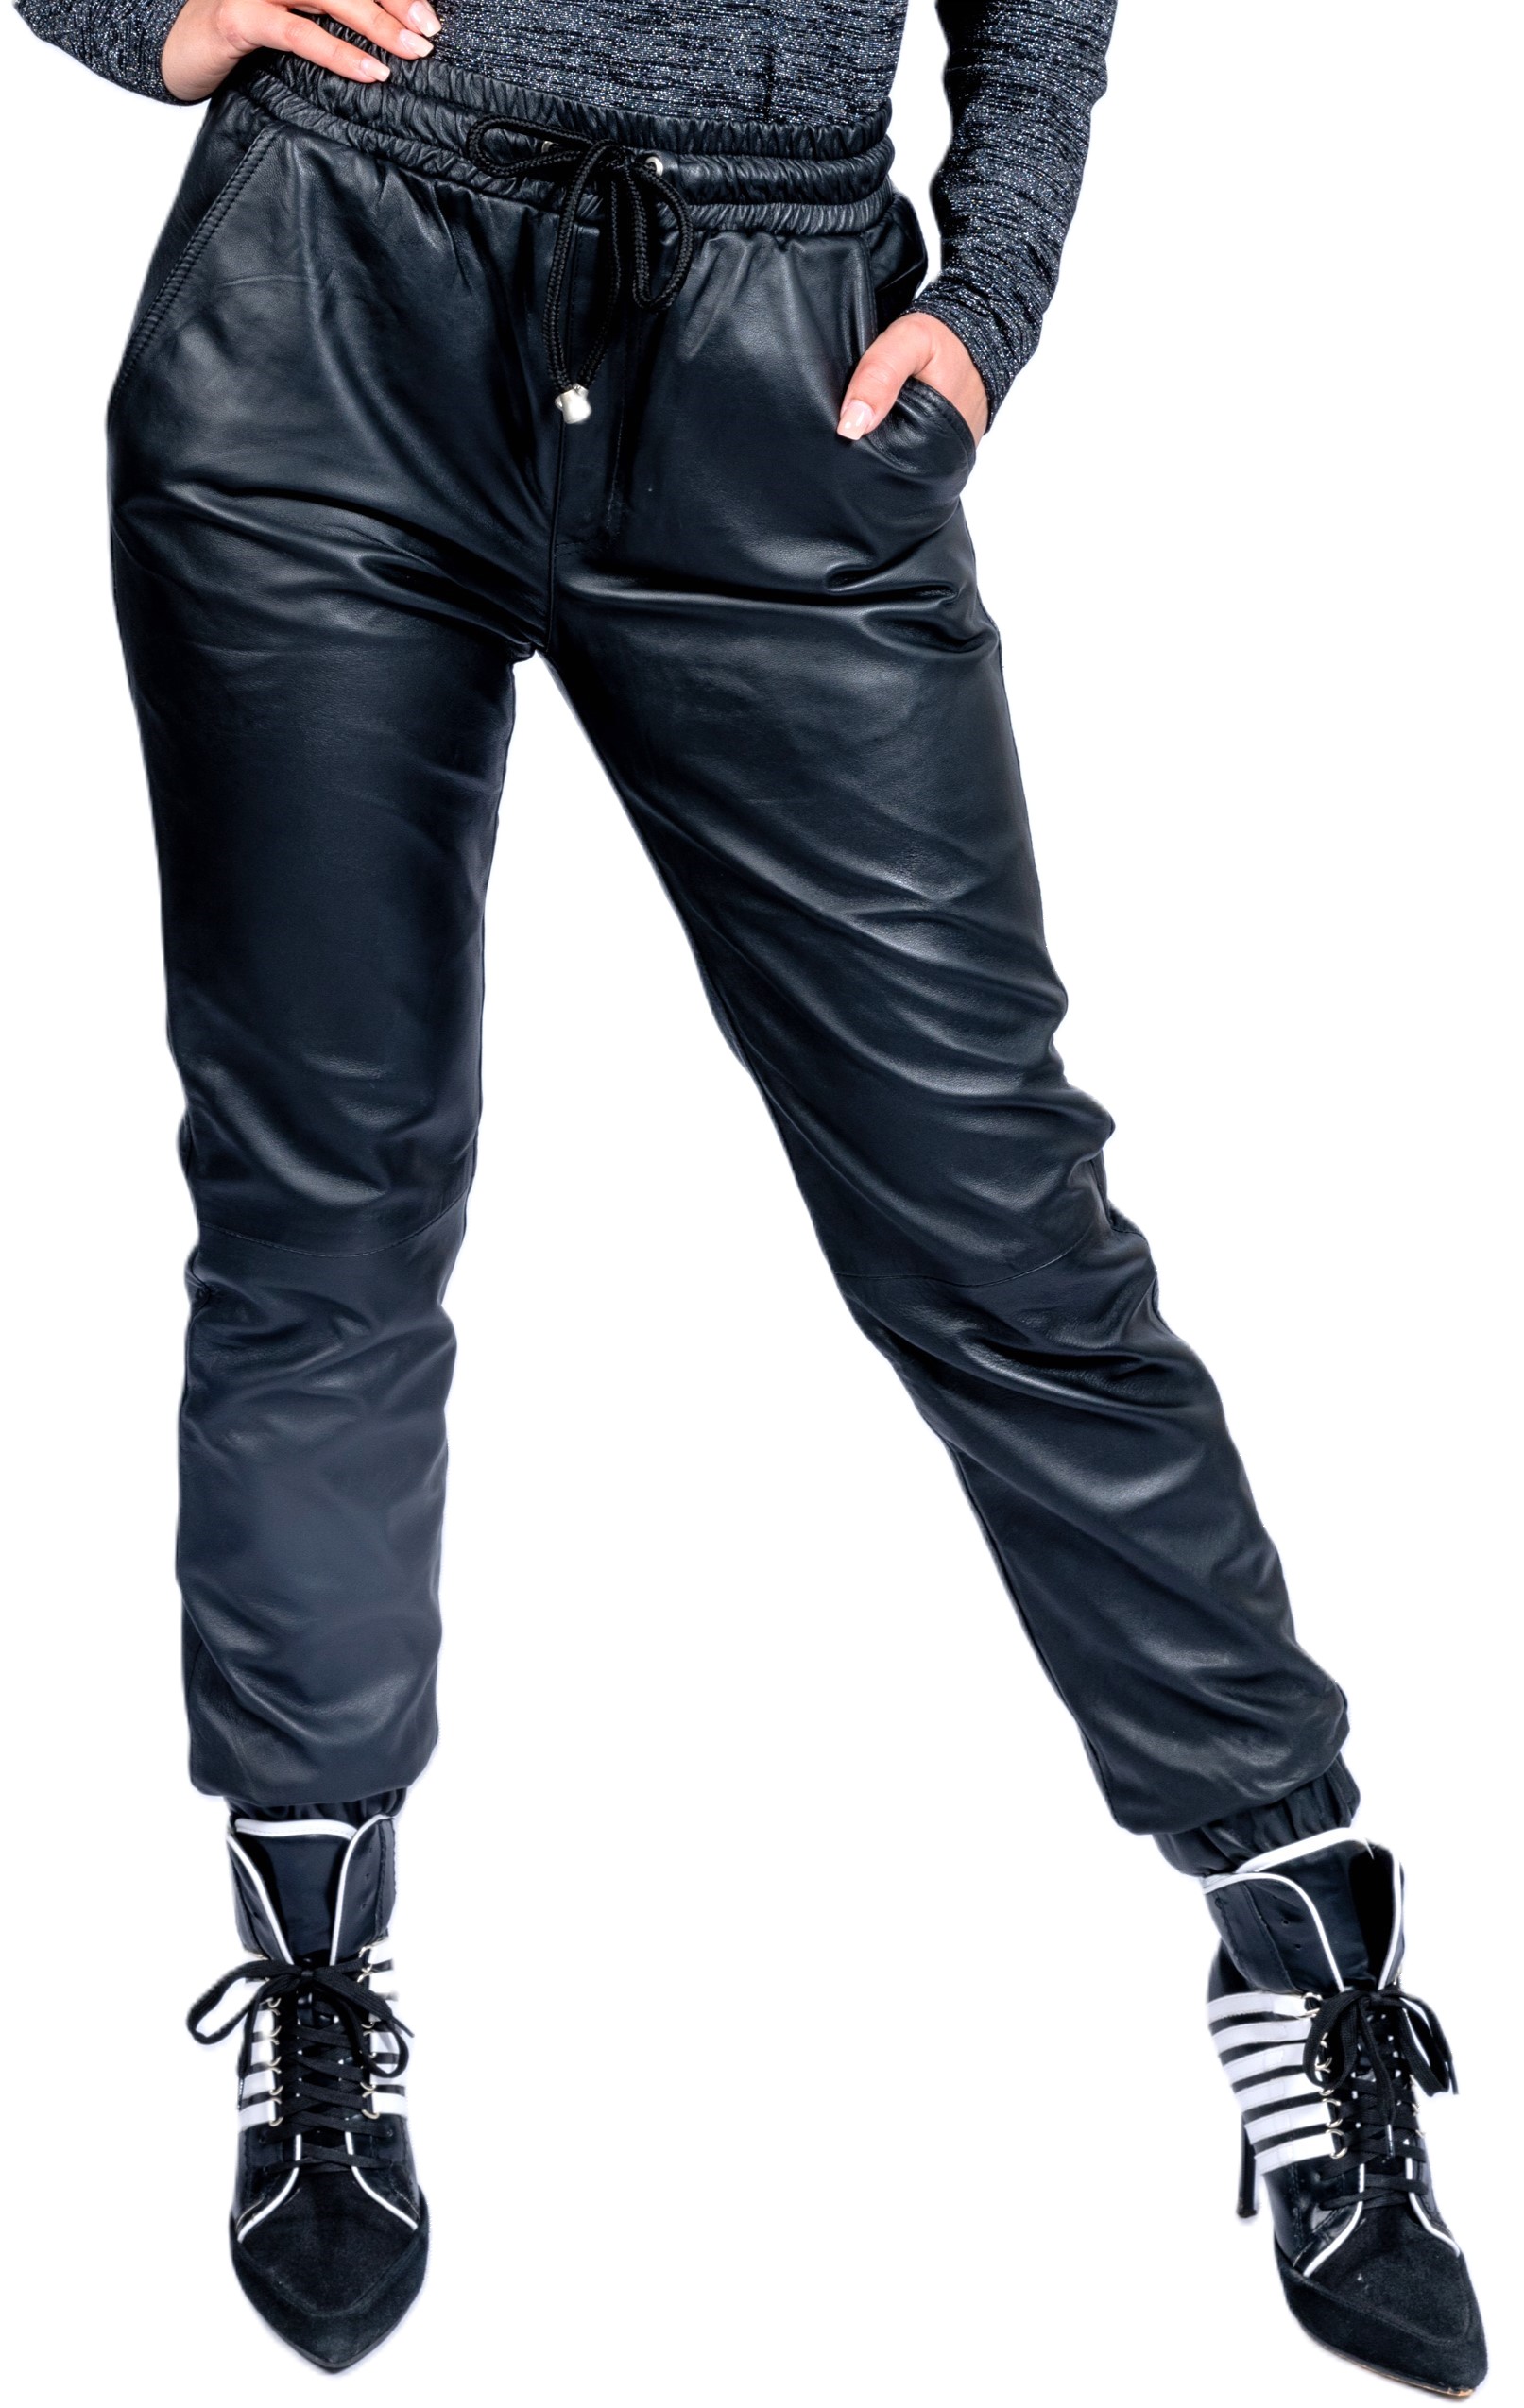 Pantalones de jogging como pantalones de cuero hechos de cuero genuino en negro